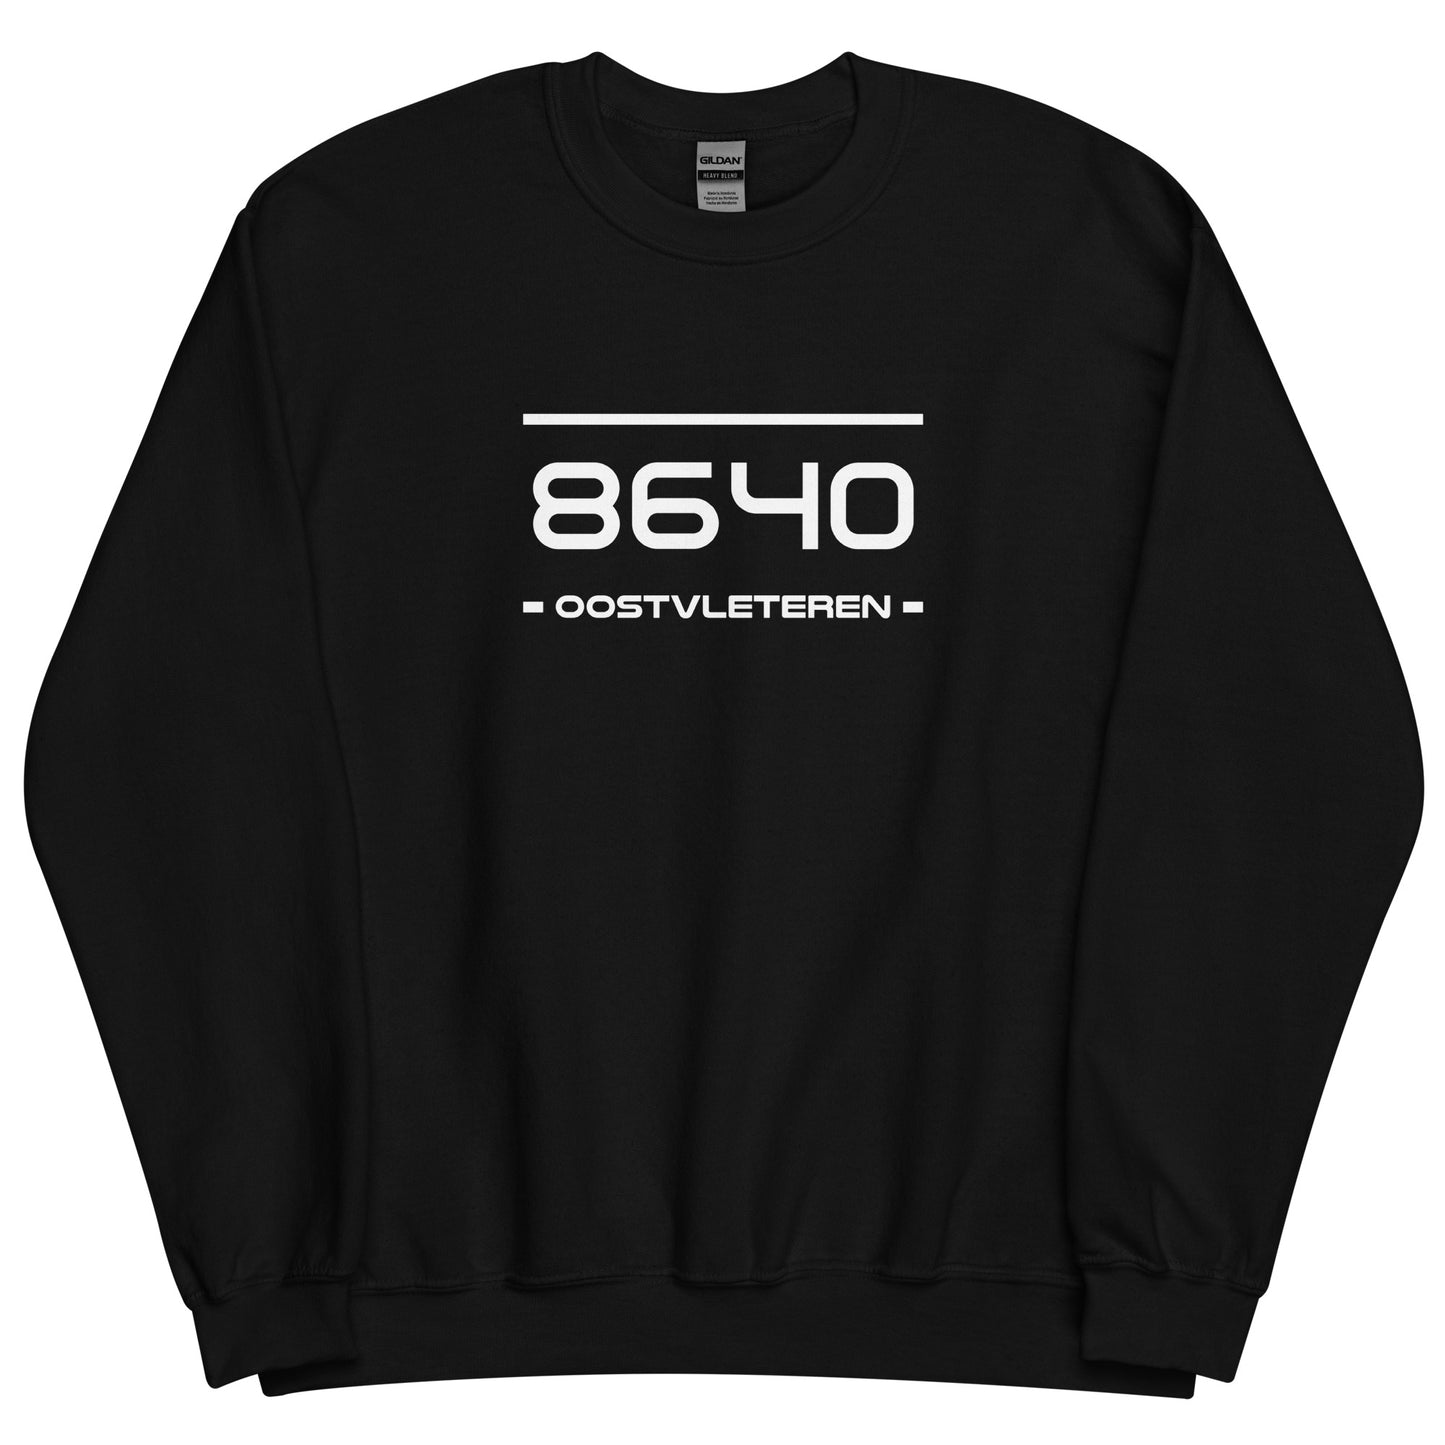 Sweater - 8640 - Oostvleteren (M/V)